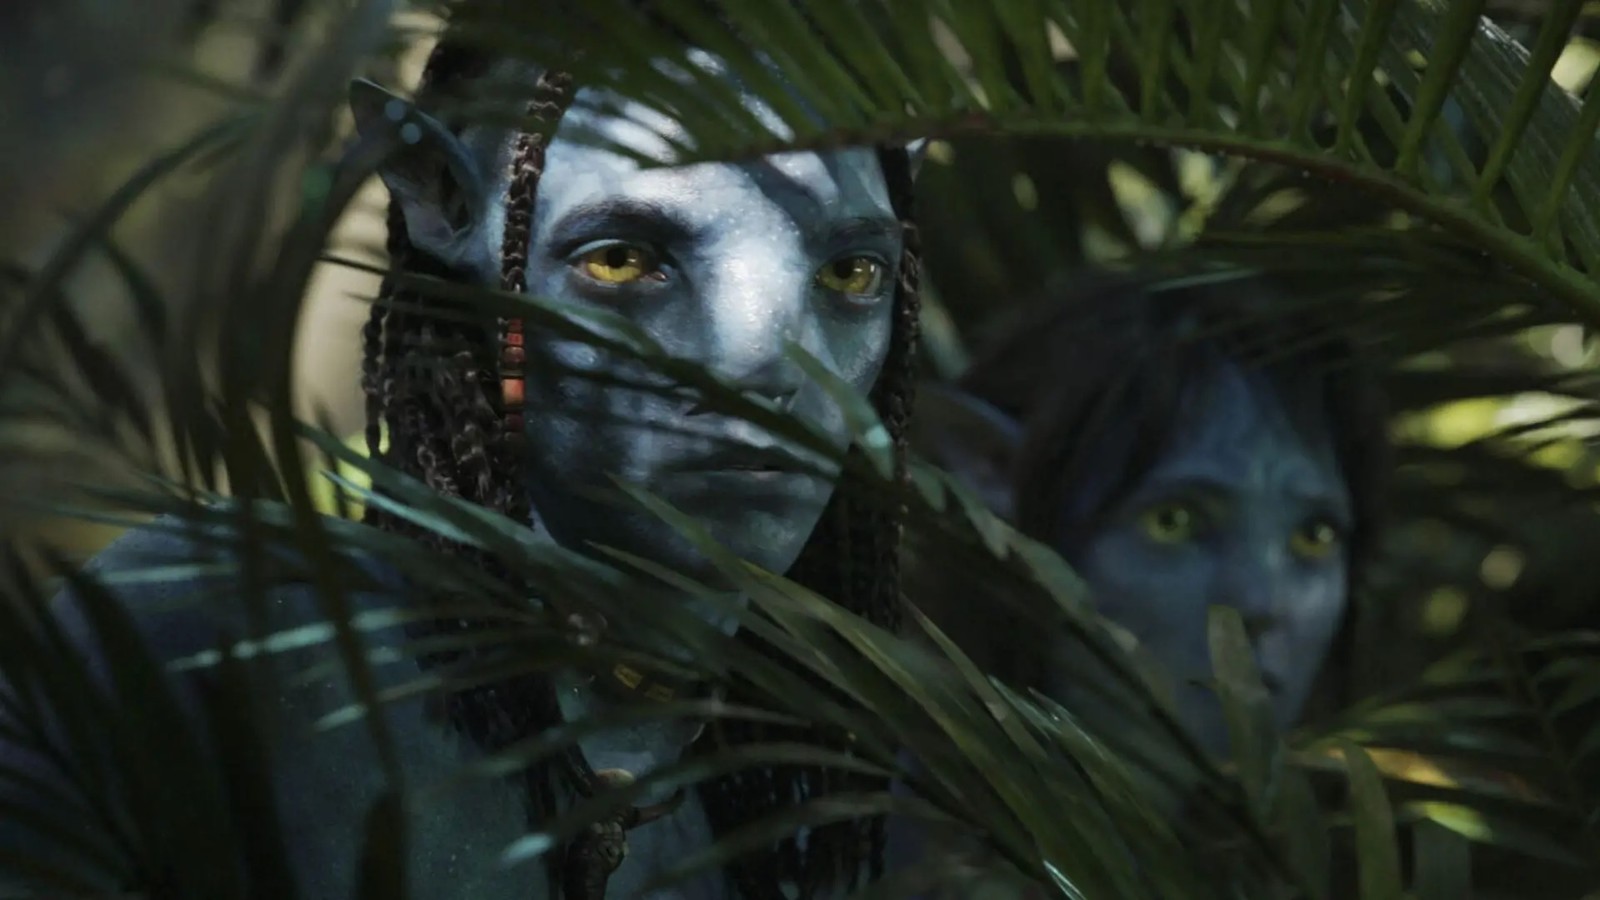 Wraca Avatar, czy z nim wróci 3D? Dlaczego telewizory 3D zniknęły z rynku